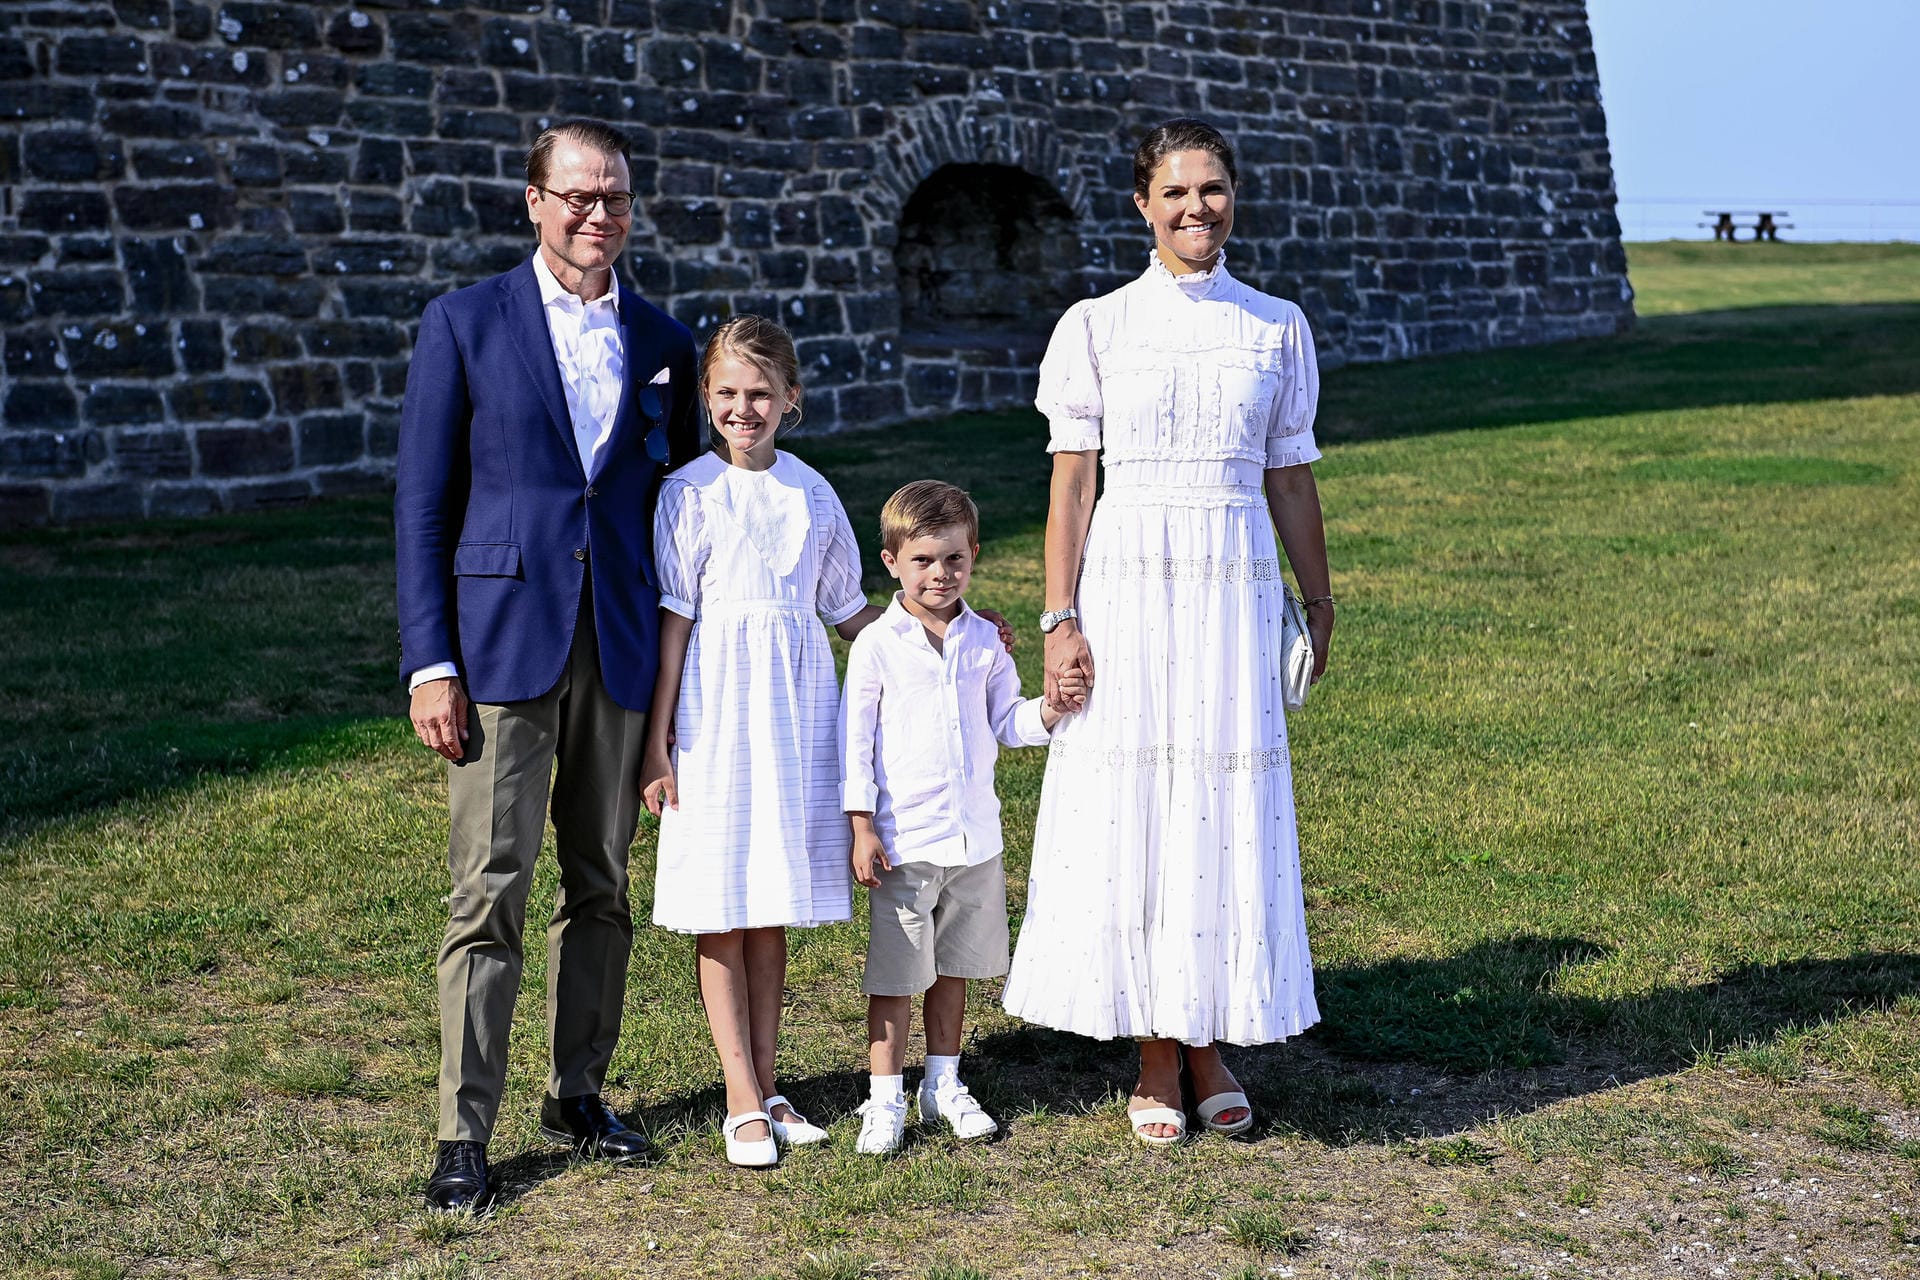 Victoria und ihr Töchterchen kamen im Partnerlook: Beide trugen weiße Kleider im selben Stil und weiße Sandalen.